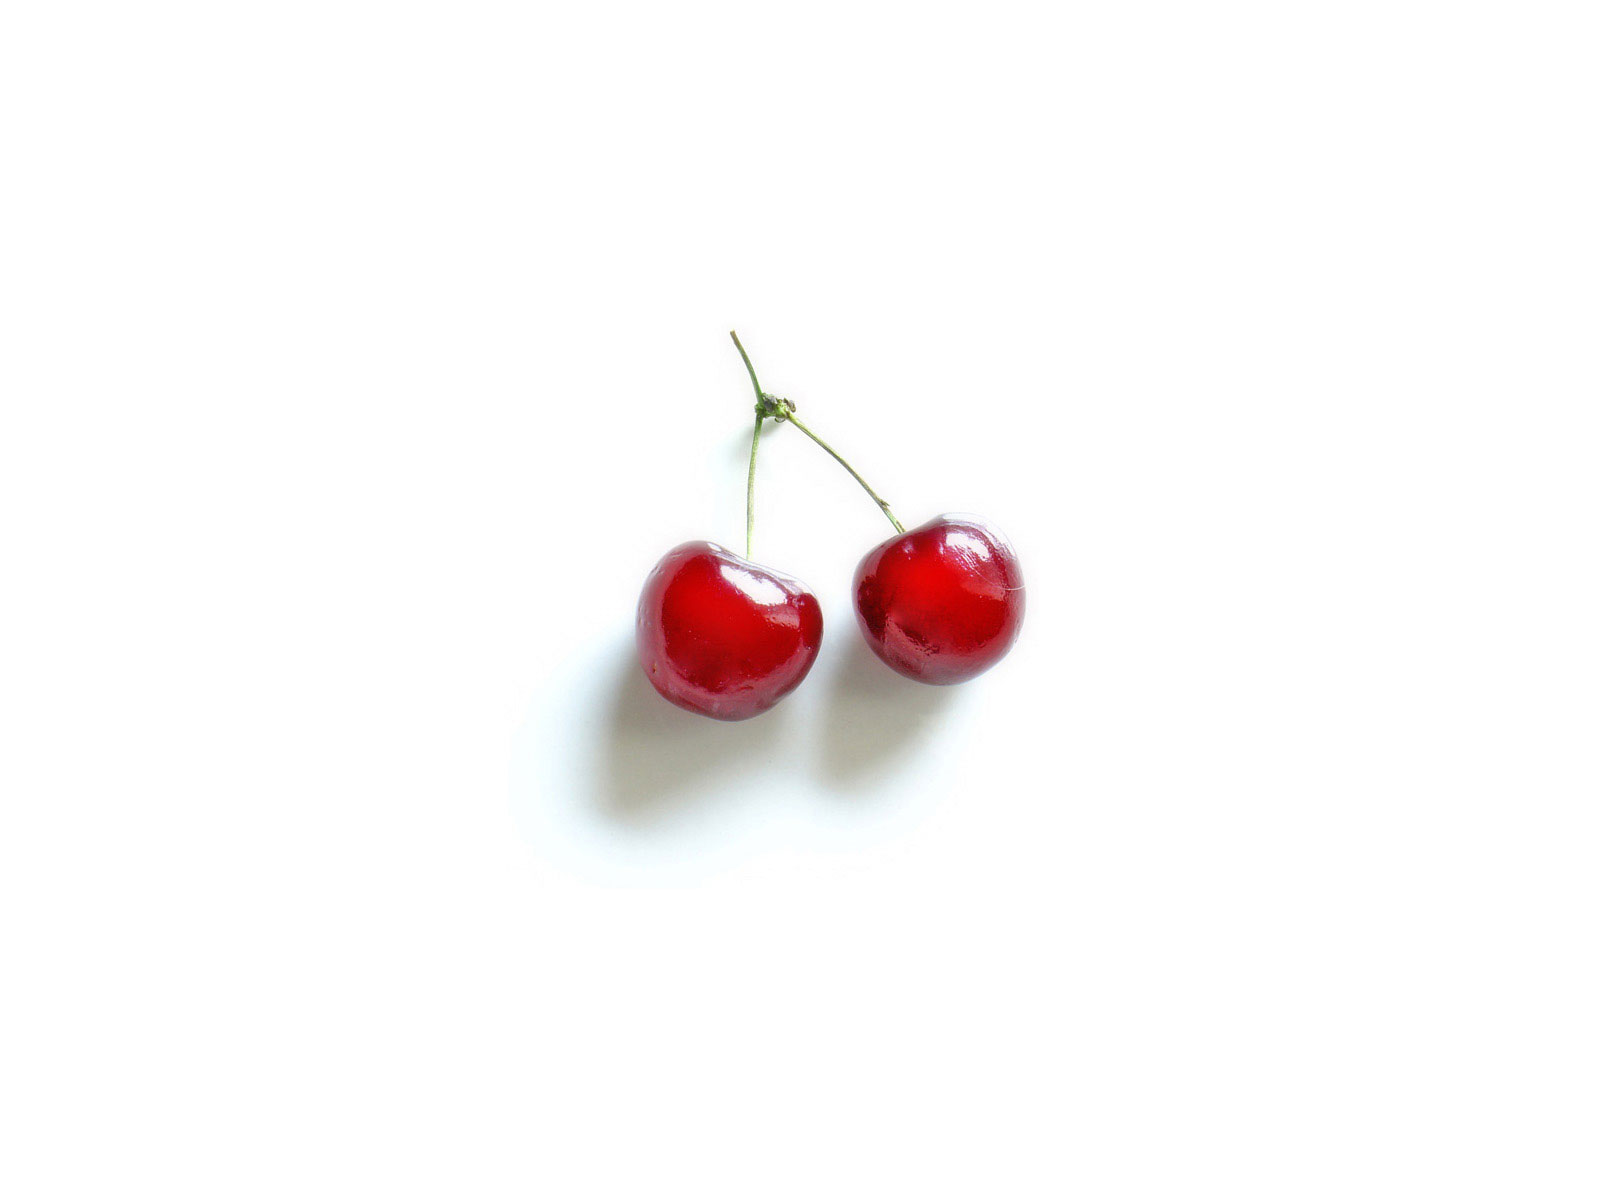 Cherries Wallpaper Cherry